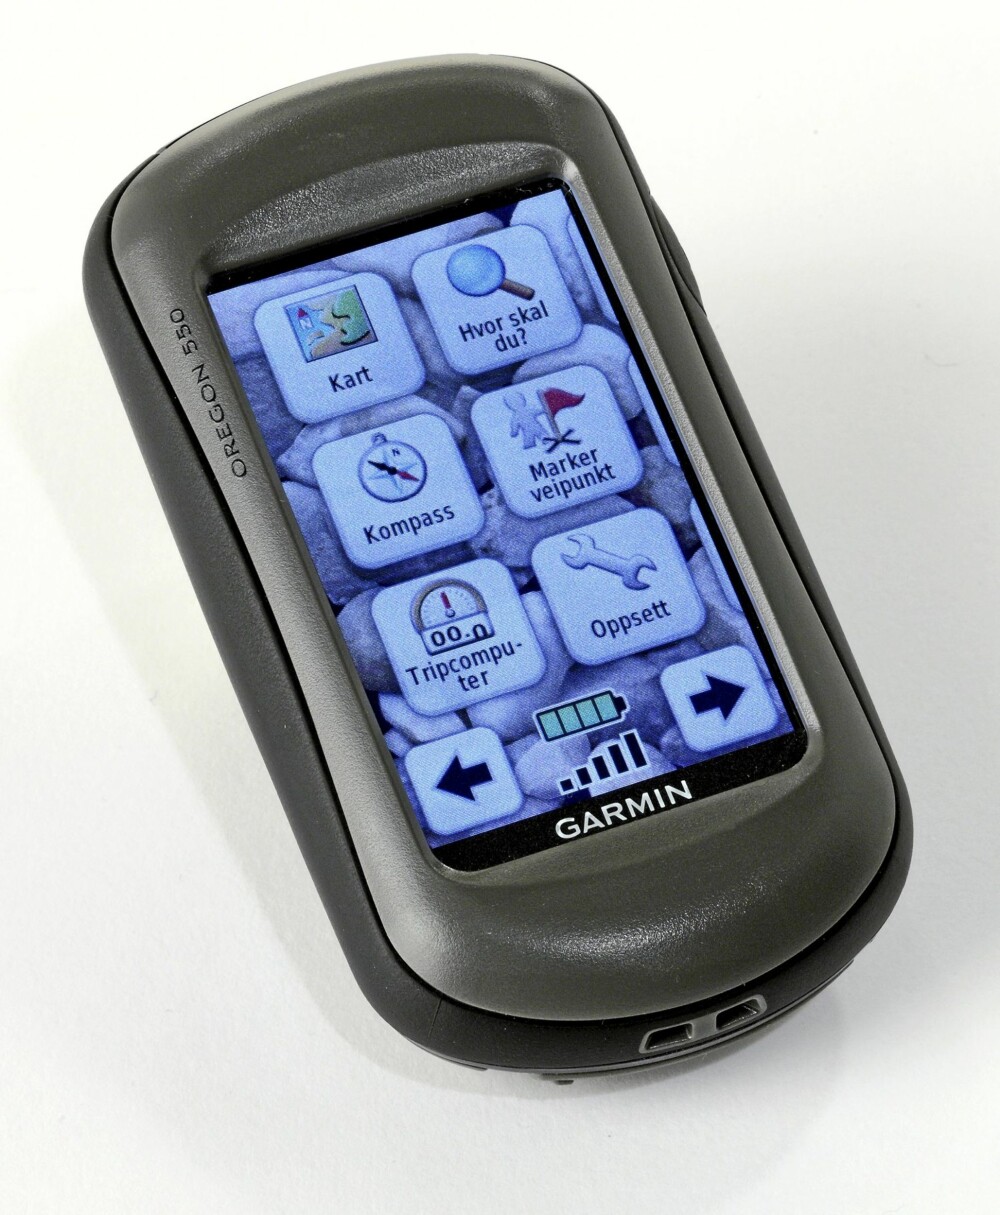 Hjelp oss å bli bedre, og bli med i trekningen av en av markedets beste GPS-er, Garmin Oregon 550, til en verdi av 4000 kr.